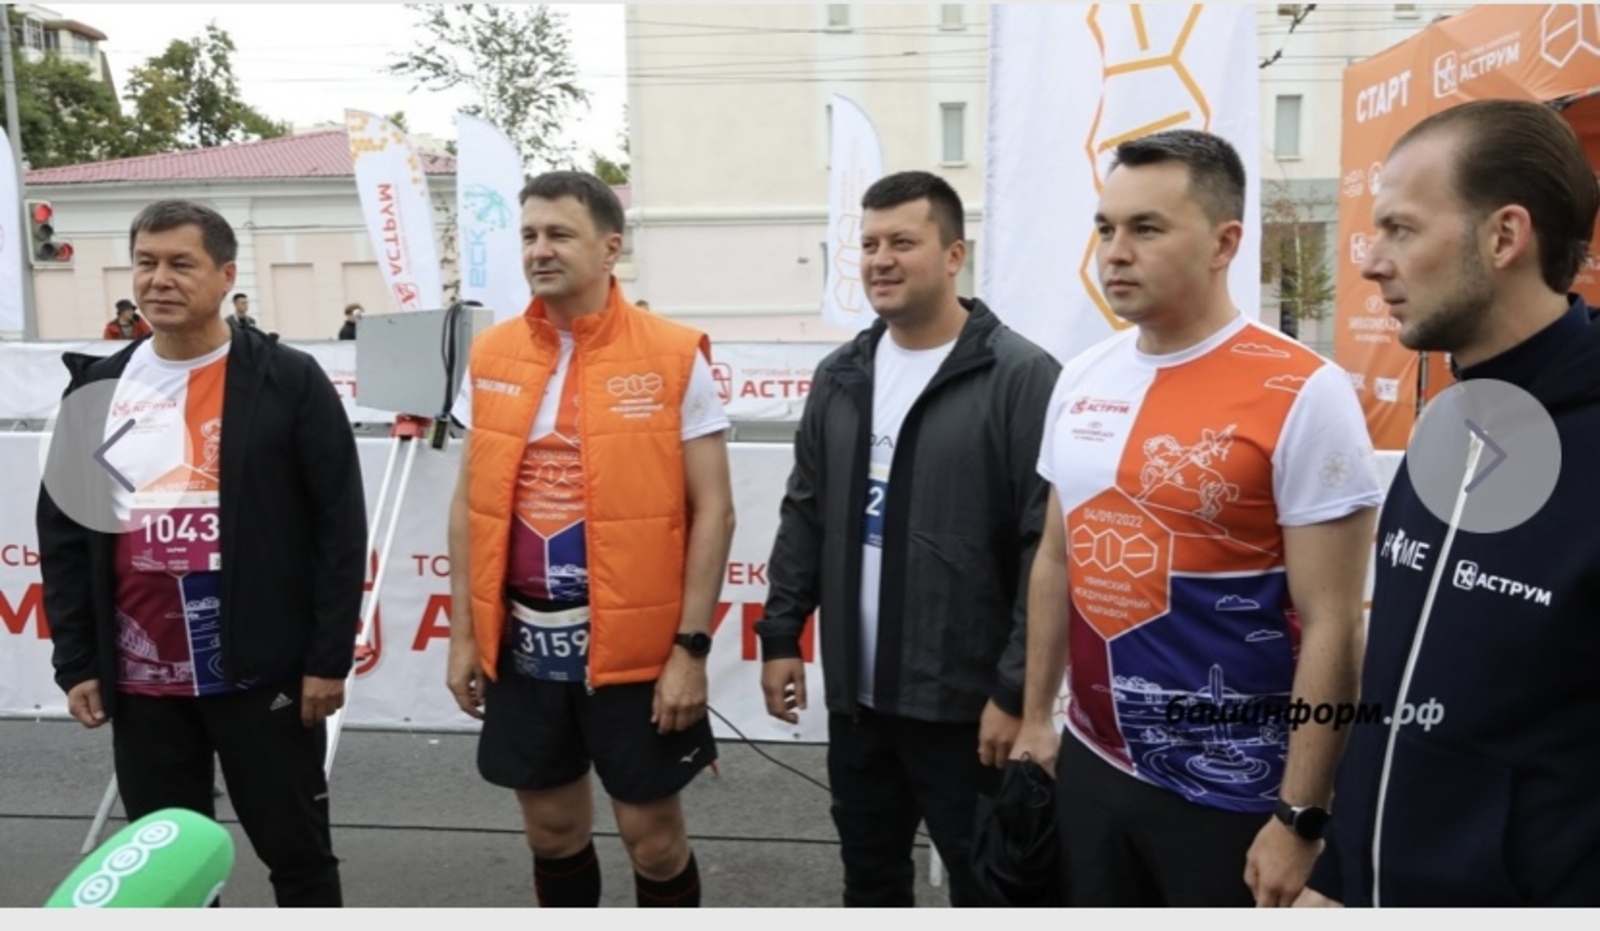 Максим Забелин на международном марафоне пробежал дистанцию в 10 км